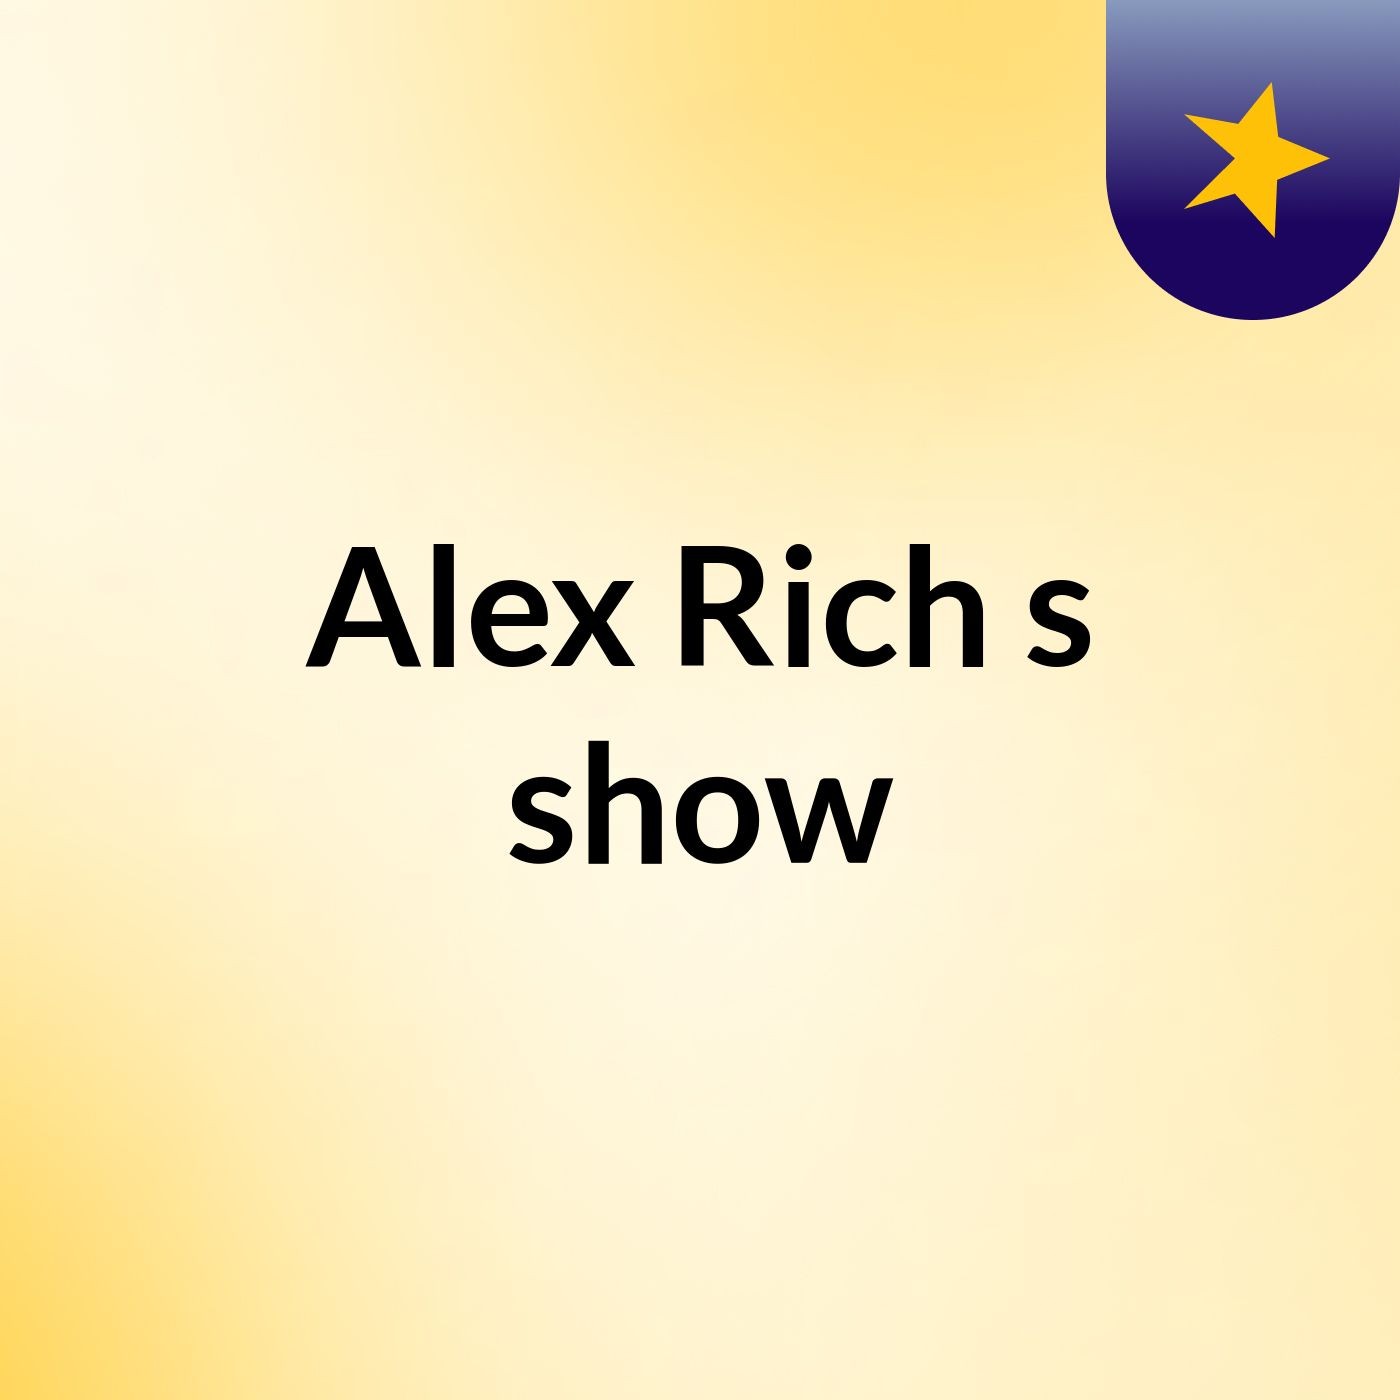 Alex Rich's show